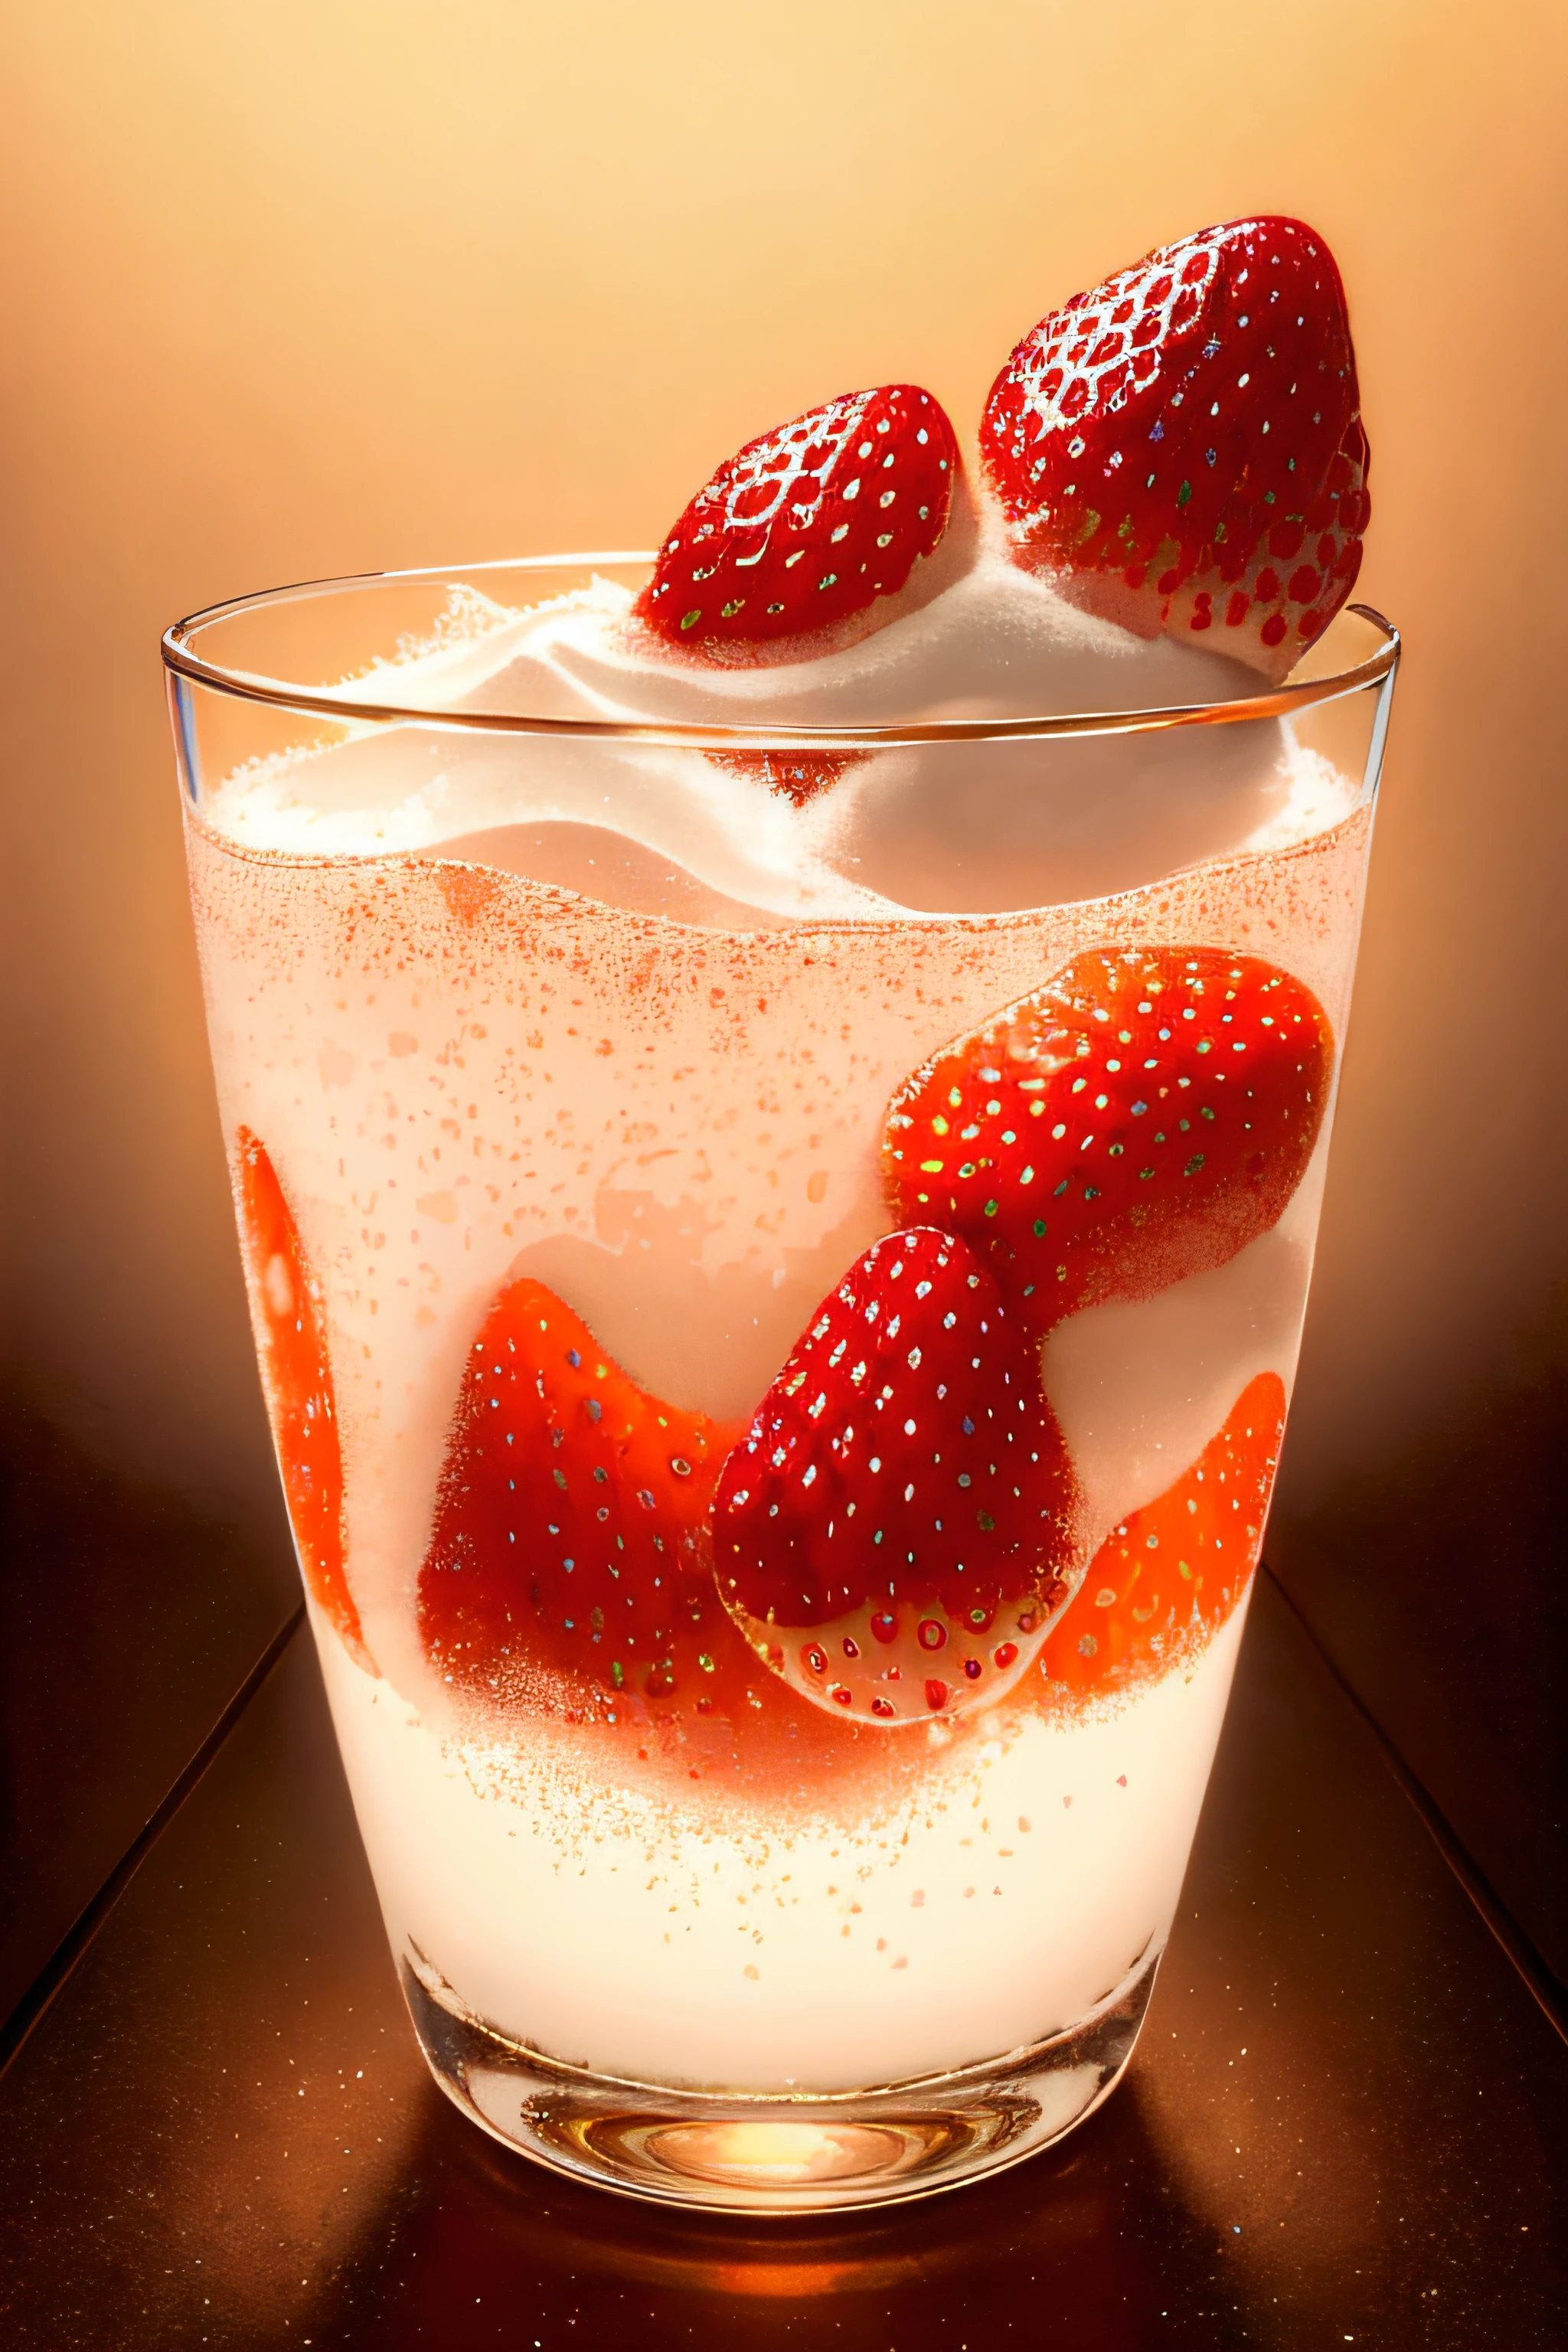 (마법의 사진:1.3) ~의 (현실적인:1.3),(활력이 넘치는:1.3) product photography ~의 a strawberries falling into a glass ~의 milk, 튀김, 뒤얽힌, 서사시,(아티스트 RHADS:1.3),매우 상세한,(프로비아:1.3)